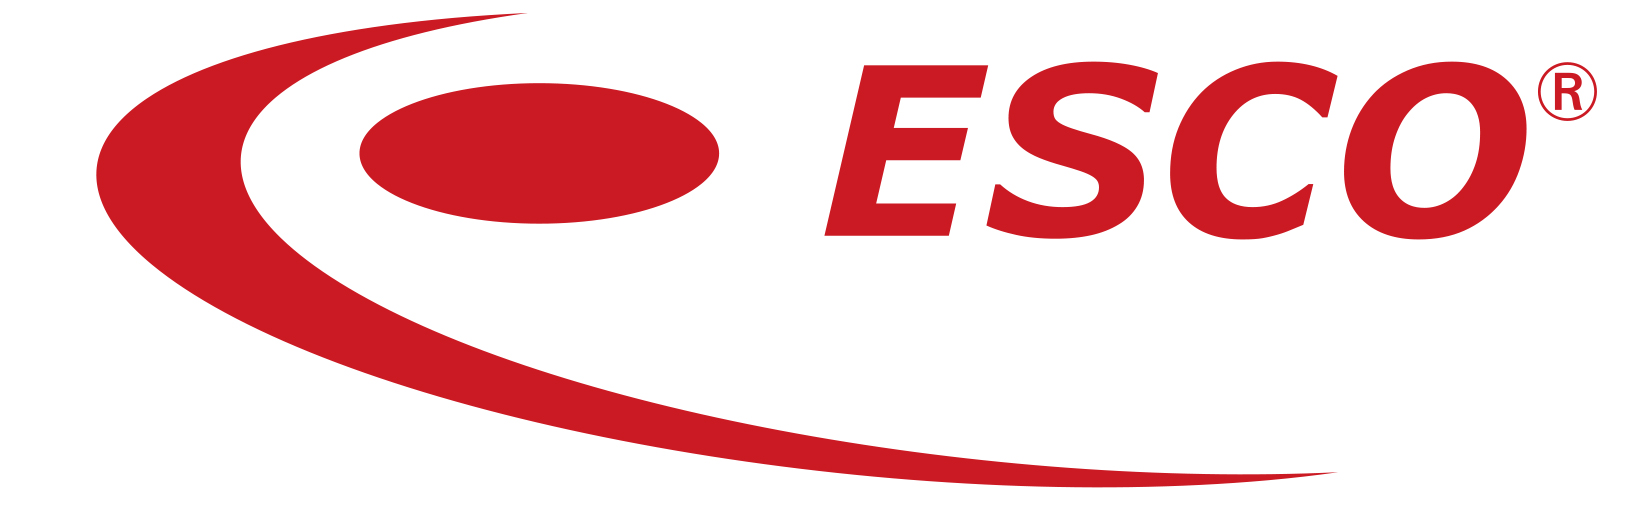 ESCO Logo photo - 1